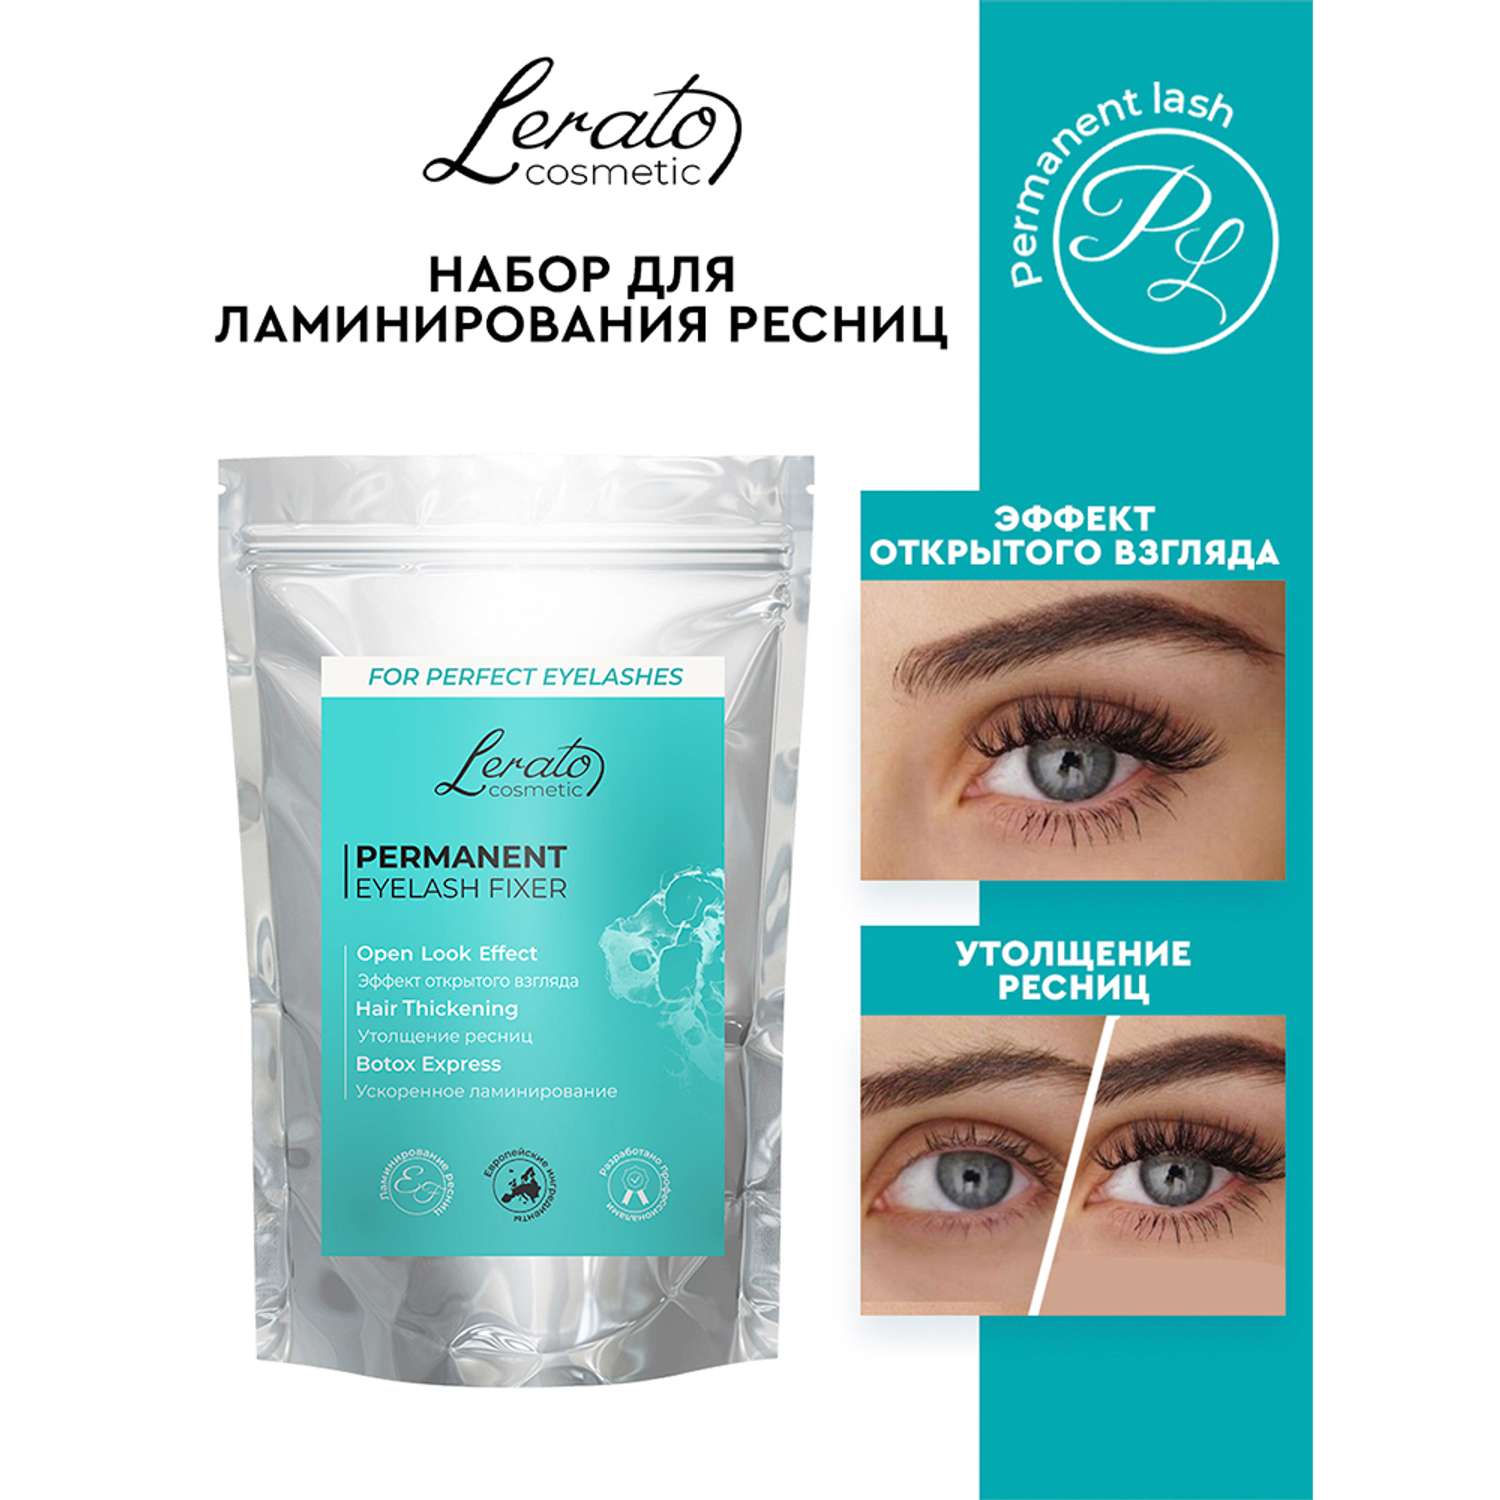 Гель Lerato Cosmetic для ламинирования ресниц Eyelash Fixer - фото 2